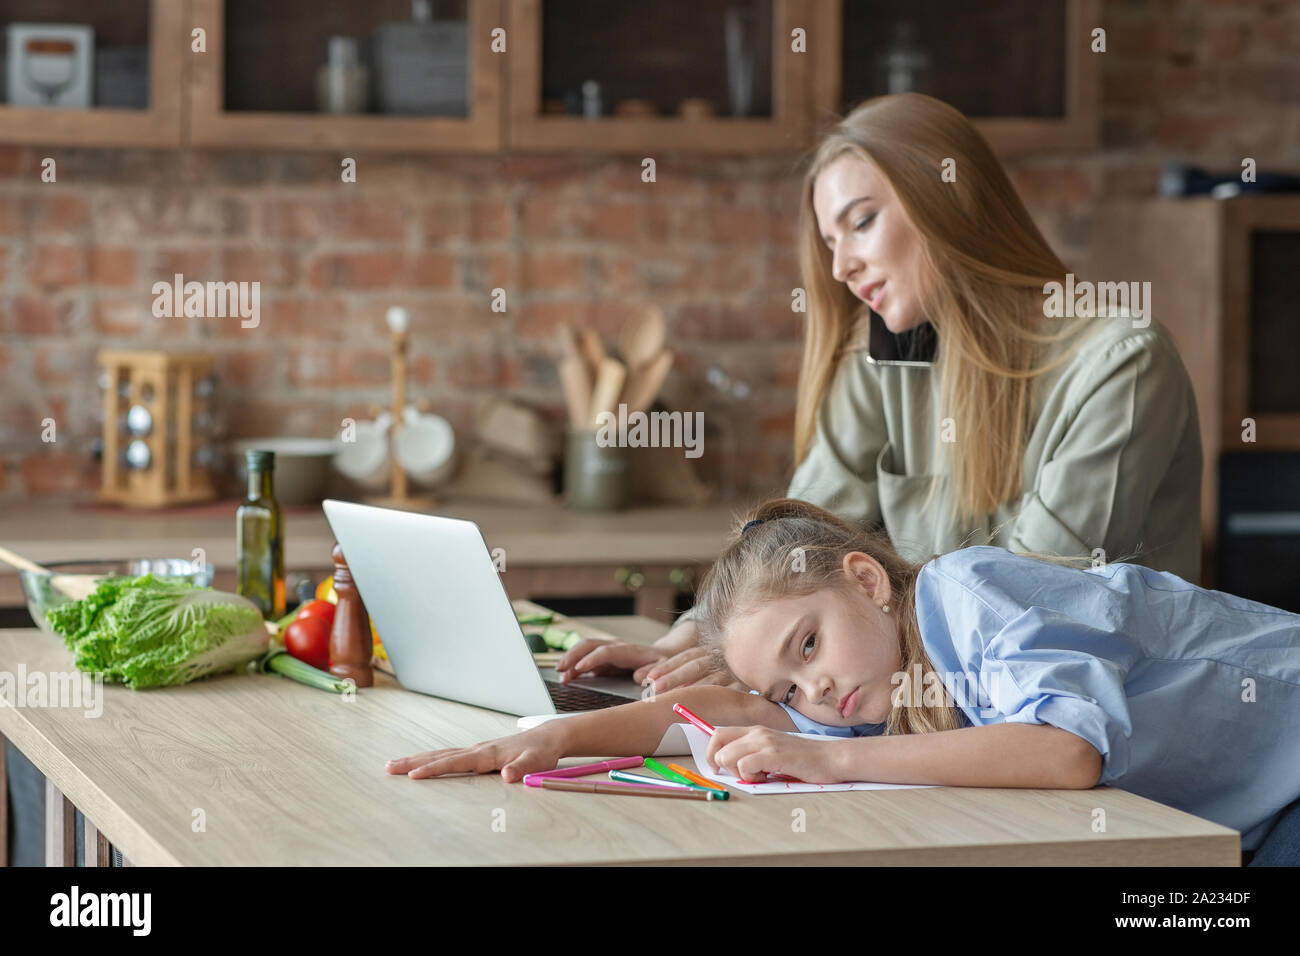 Figlia Blondy sensazione annoiato, madre parla al telefono e guardando il laptop, cucina interno, spazio di copia Foto Stock